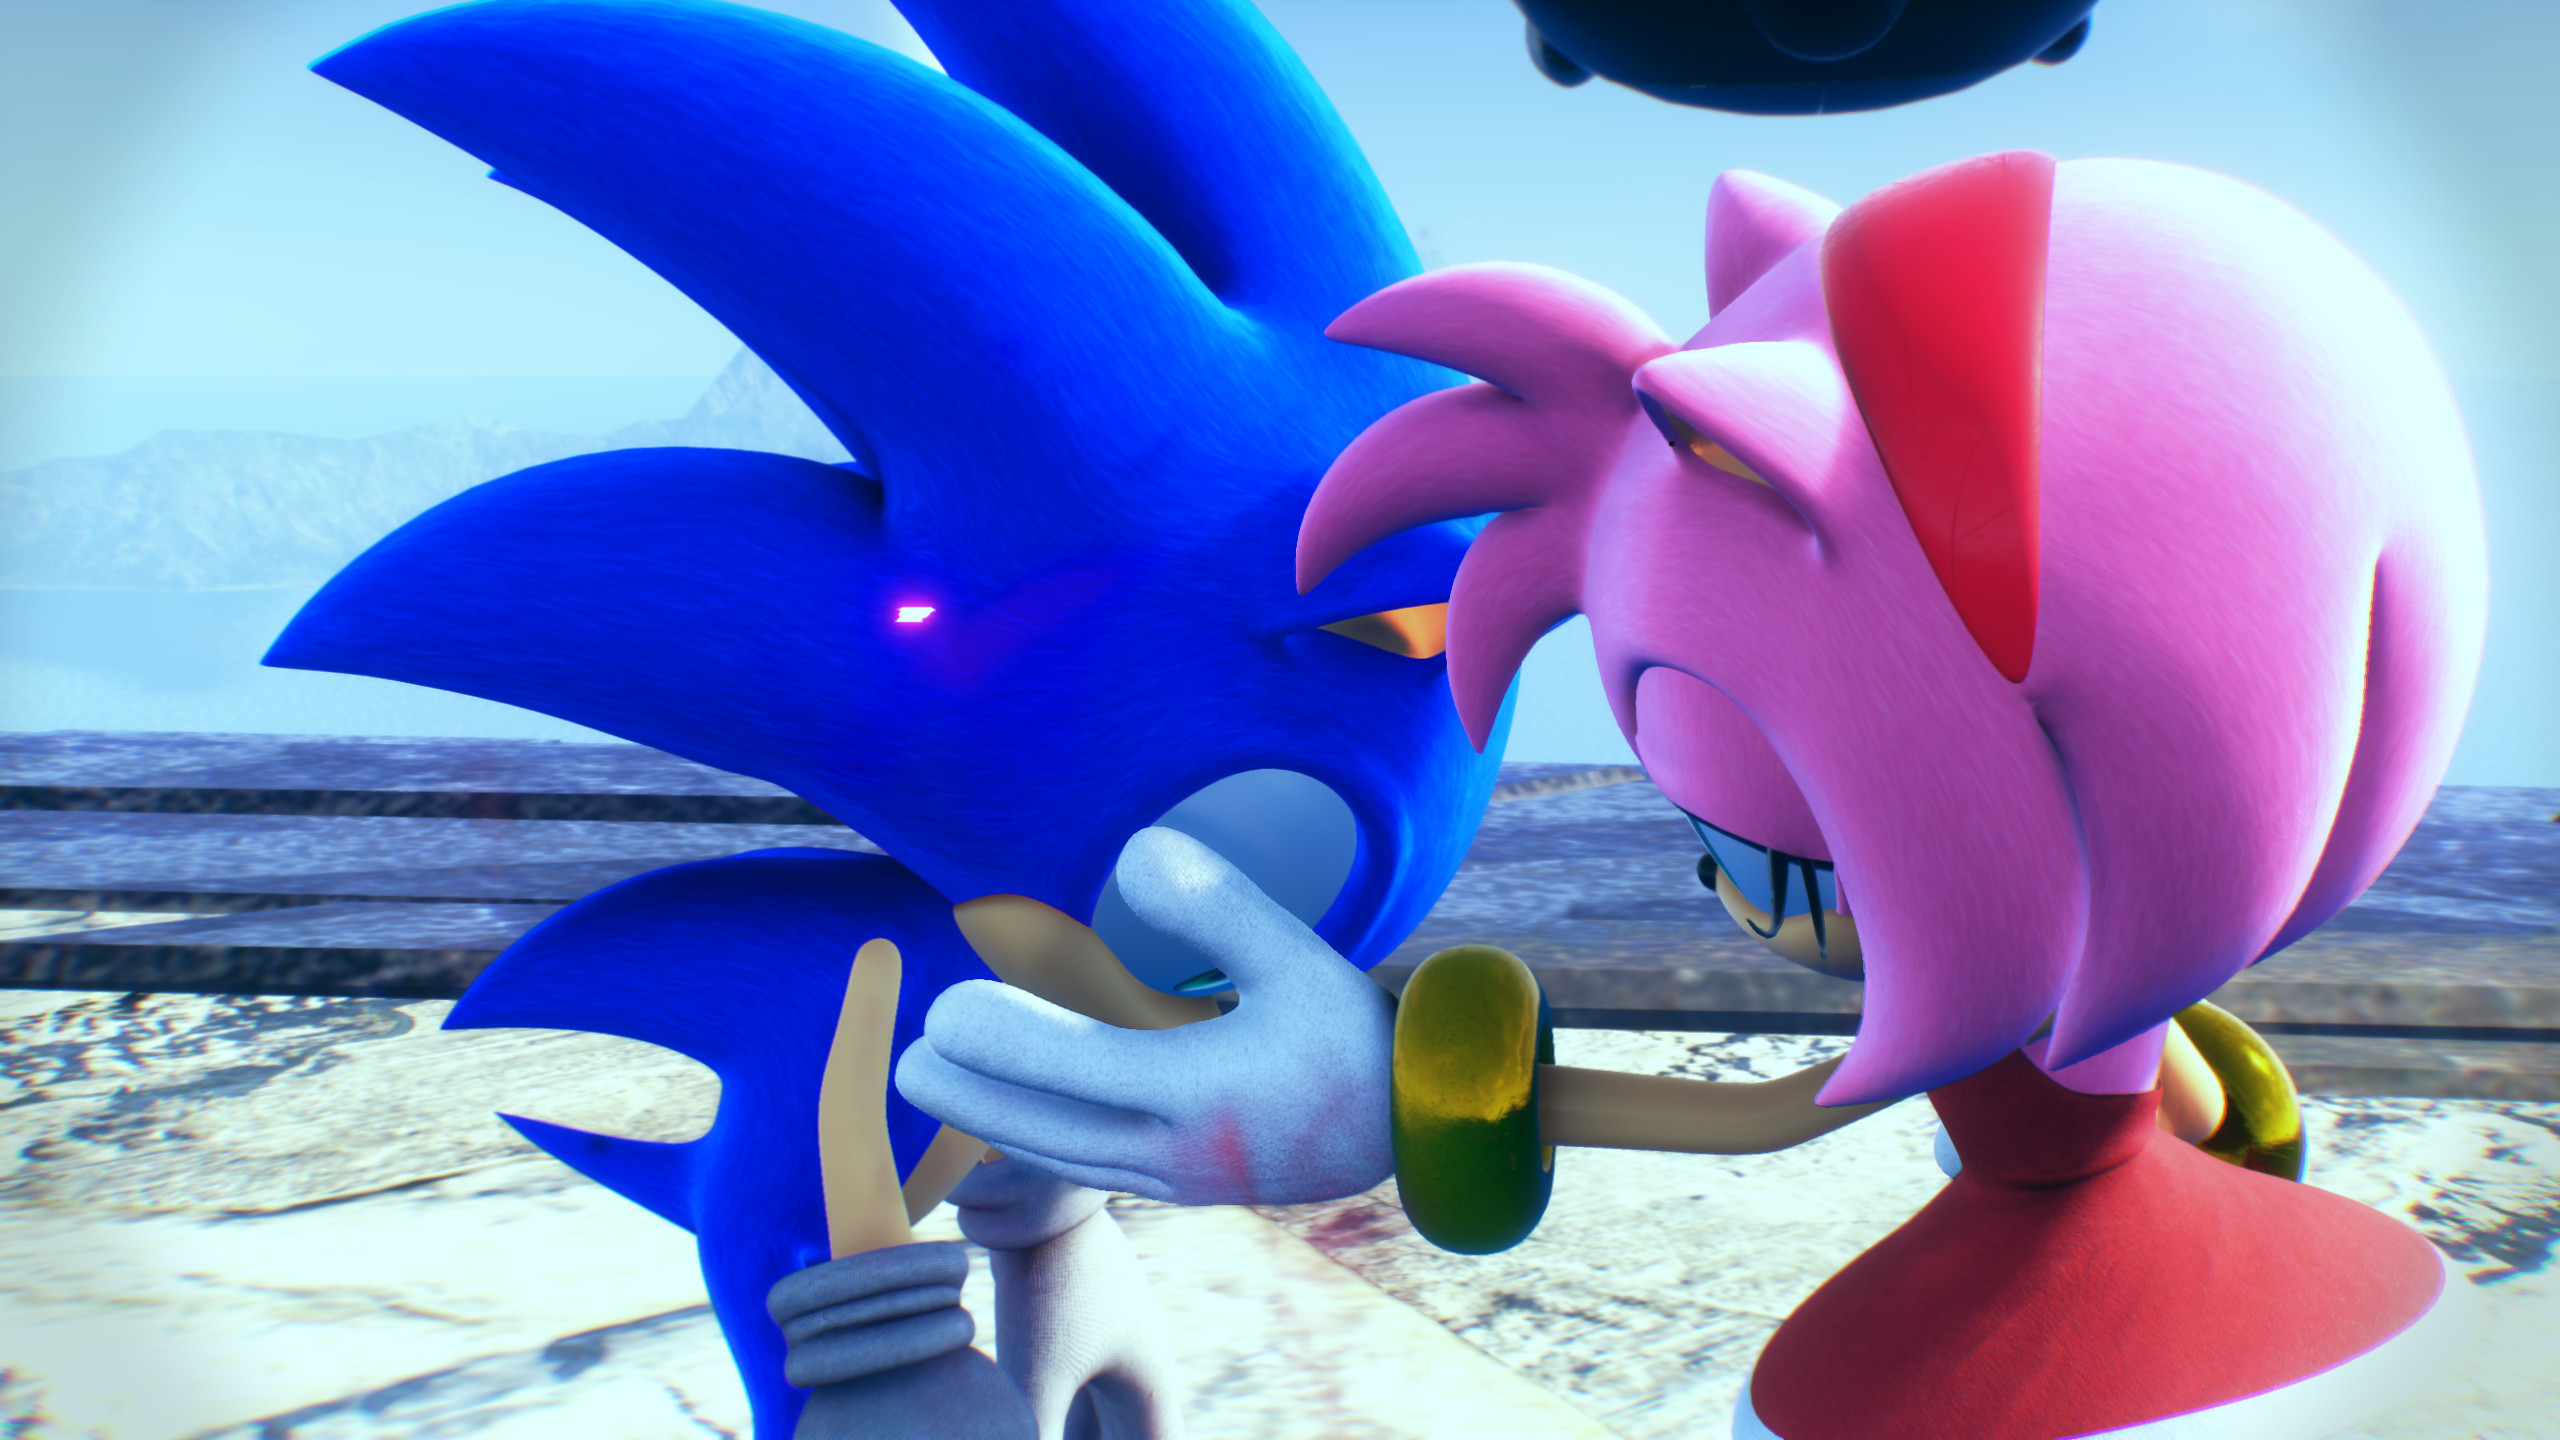 Sonic model tweaks [Sonic Frontiers] [Mods]